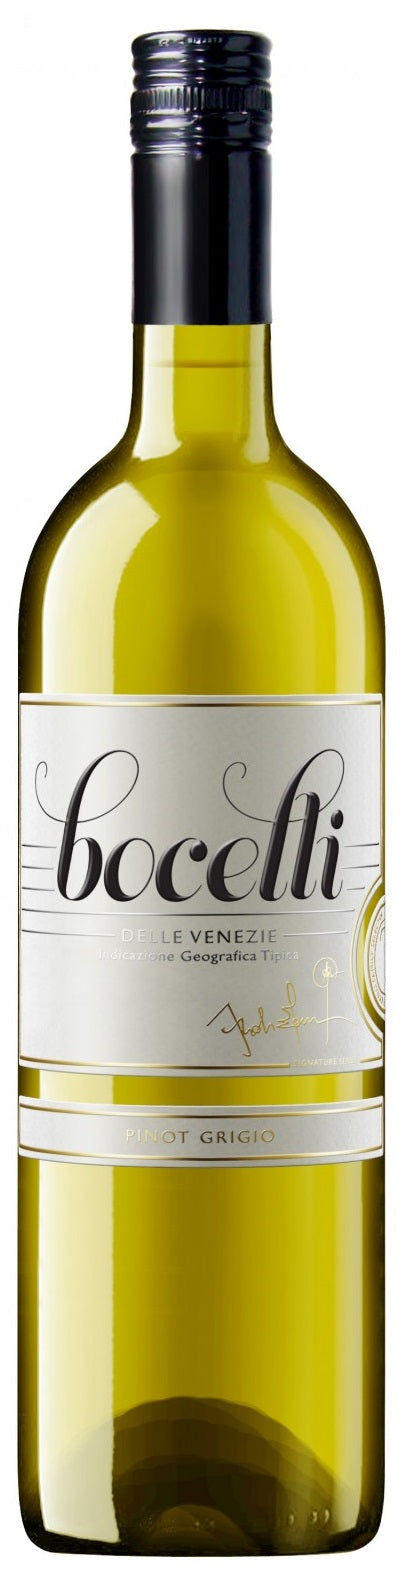 Bocelli Pinot Grigio 2016